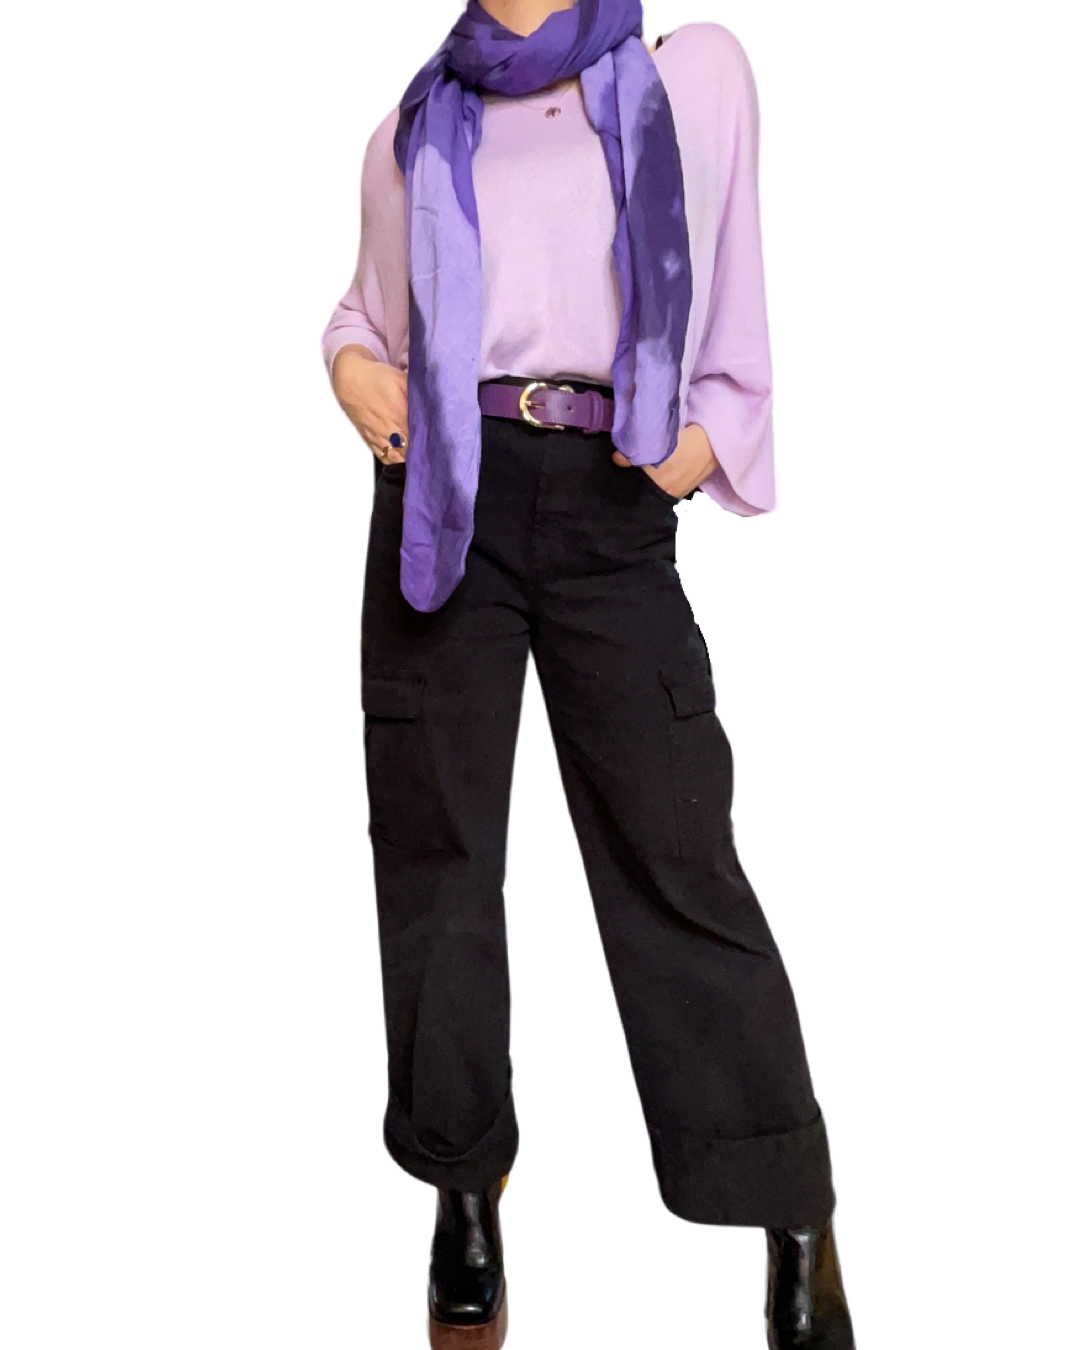 Chandail lilas femme à manche longue col en v avec foulard mauve, ceinture mauve et jeans cargo noir.